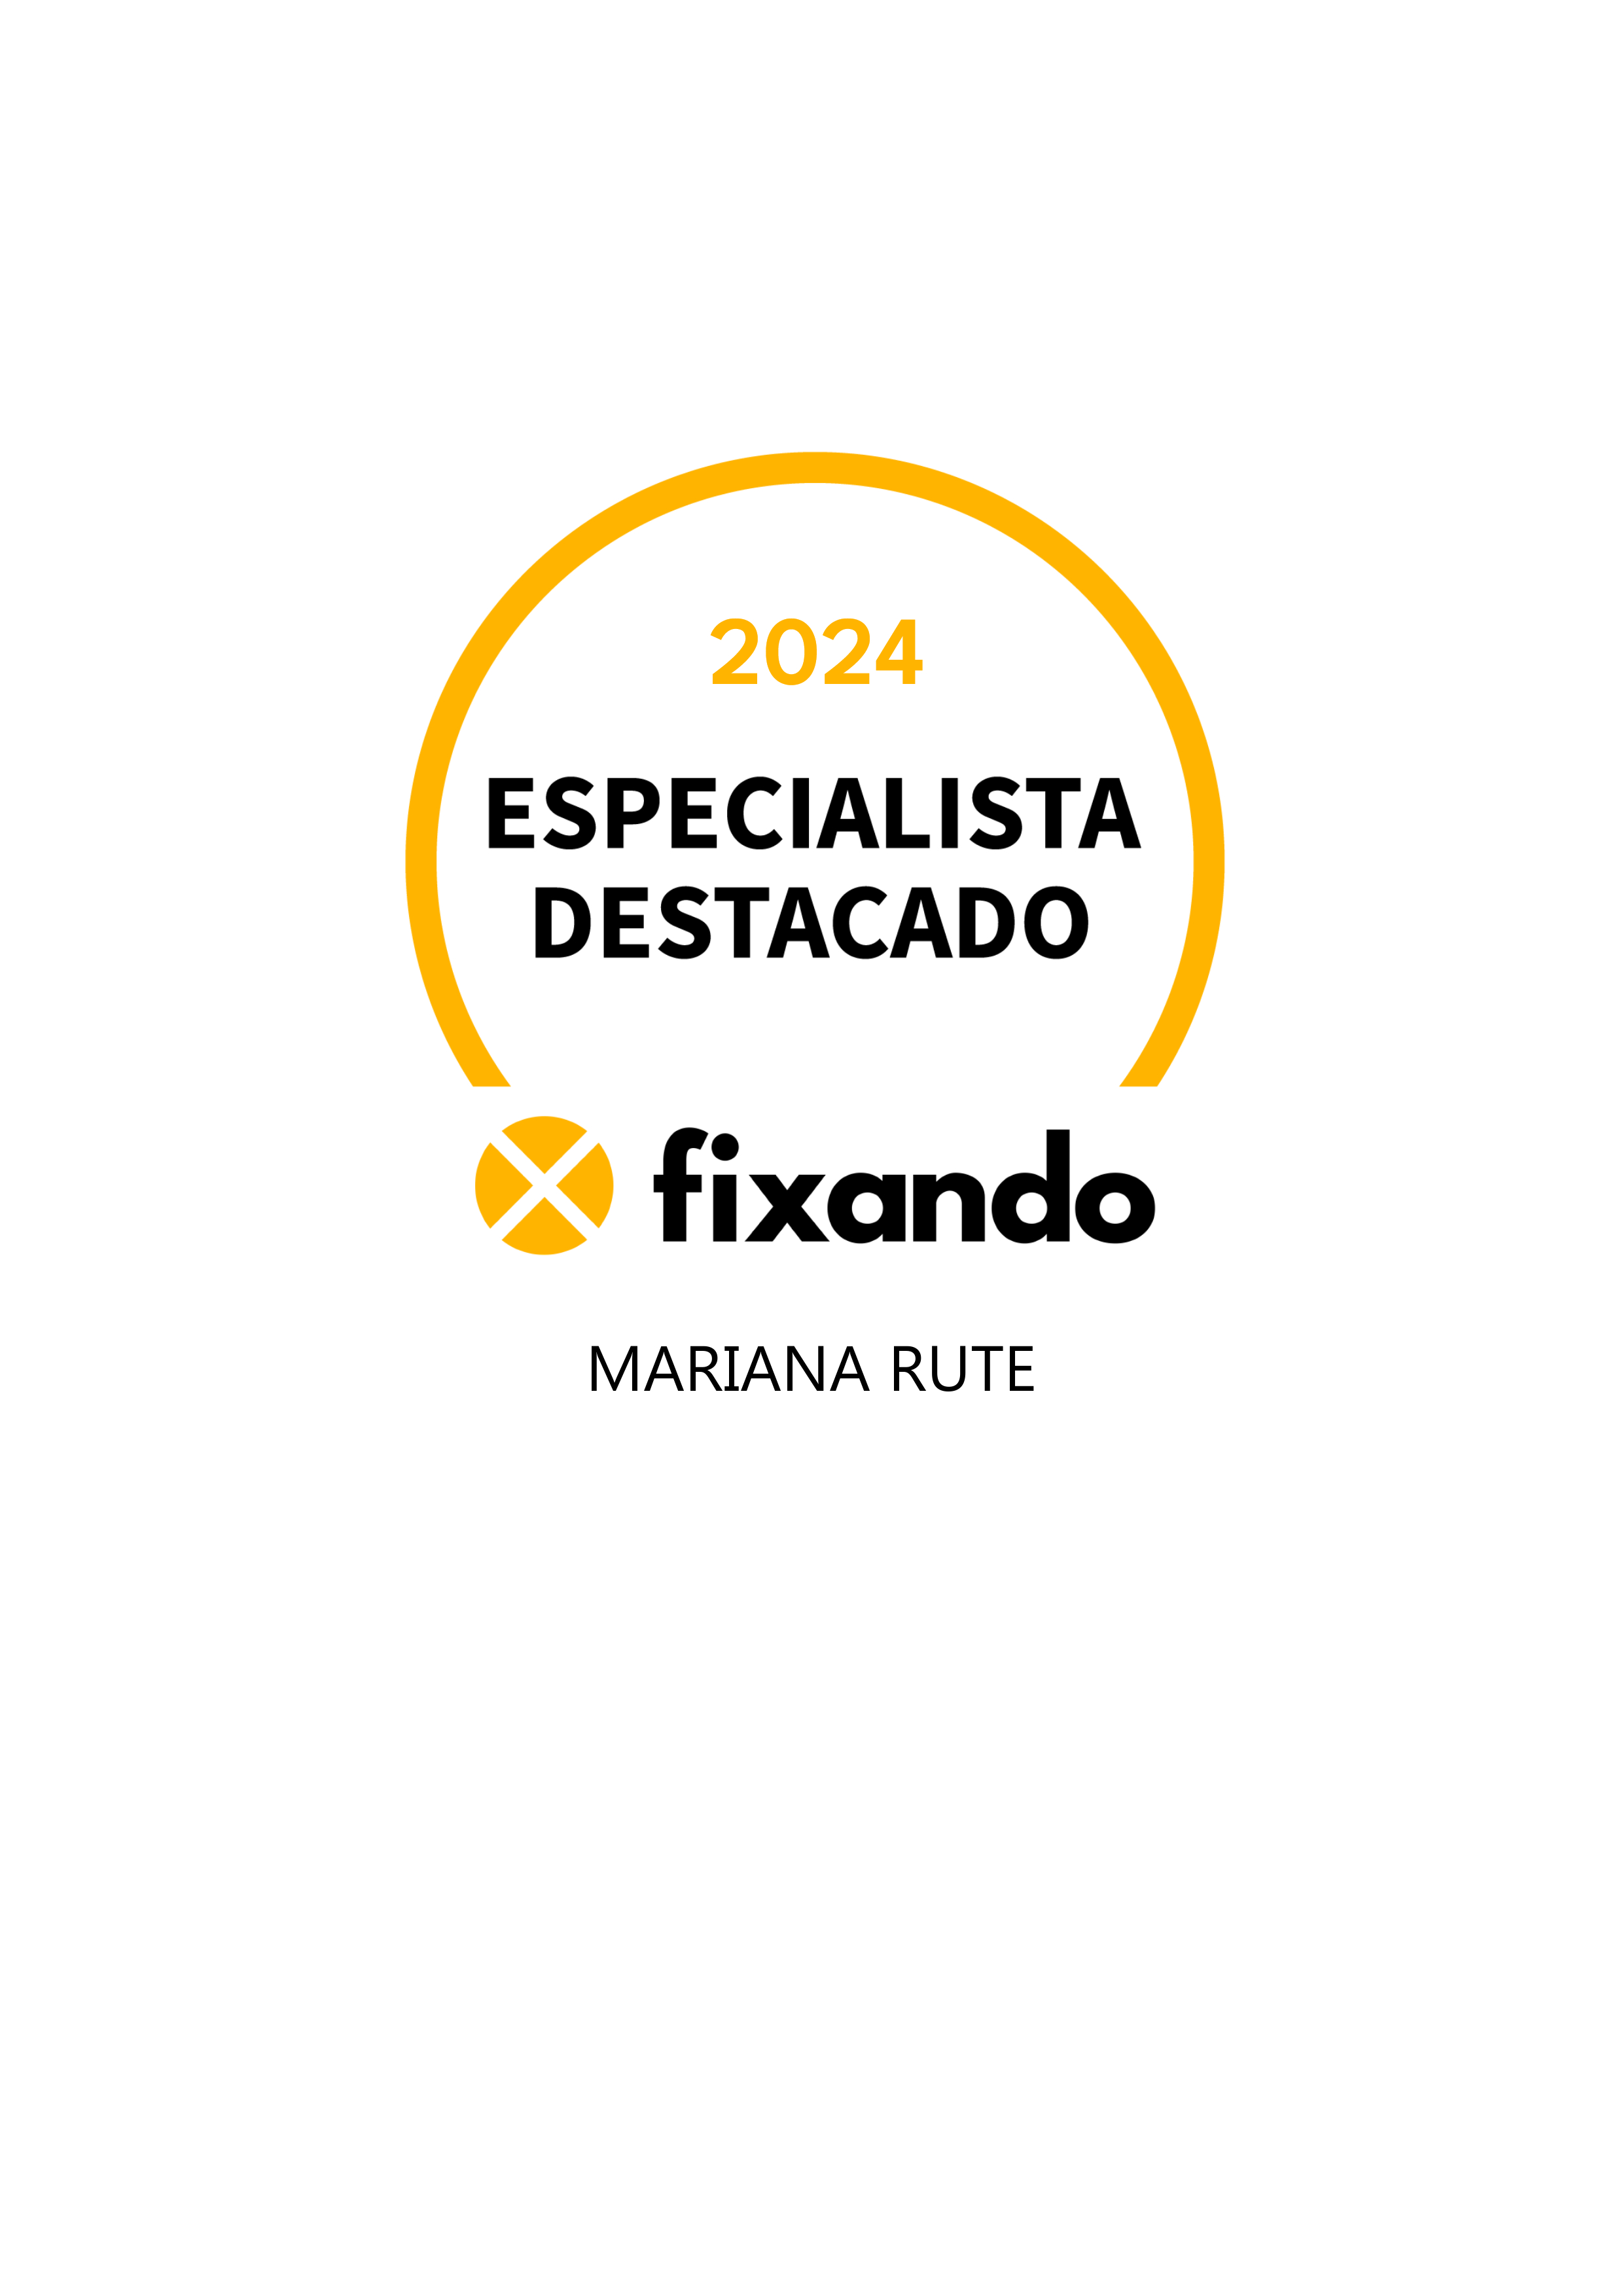 Mariana Rute - Lisboa - Design de Logotipos